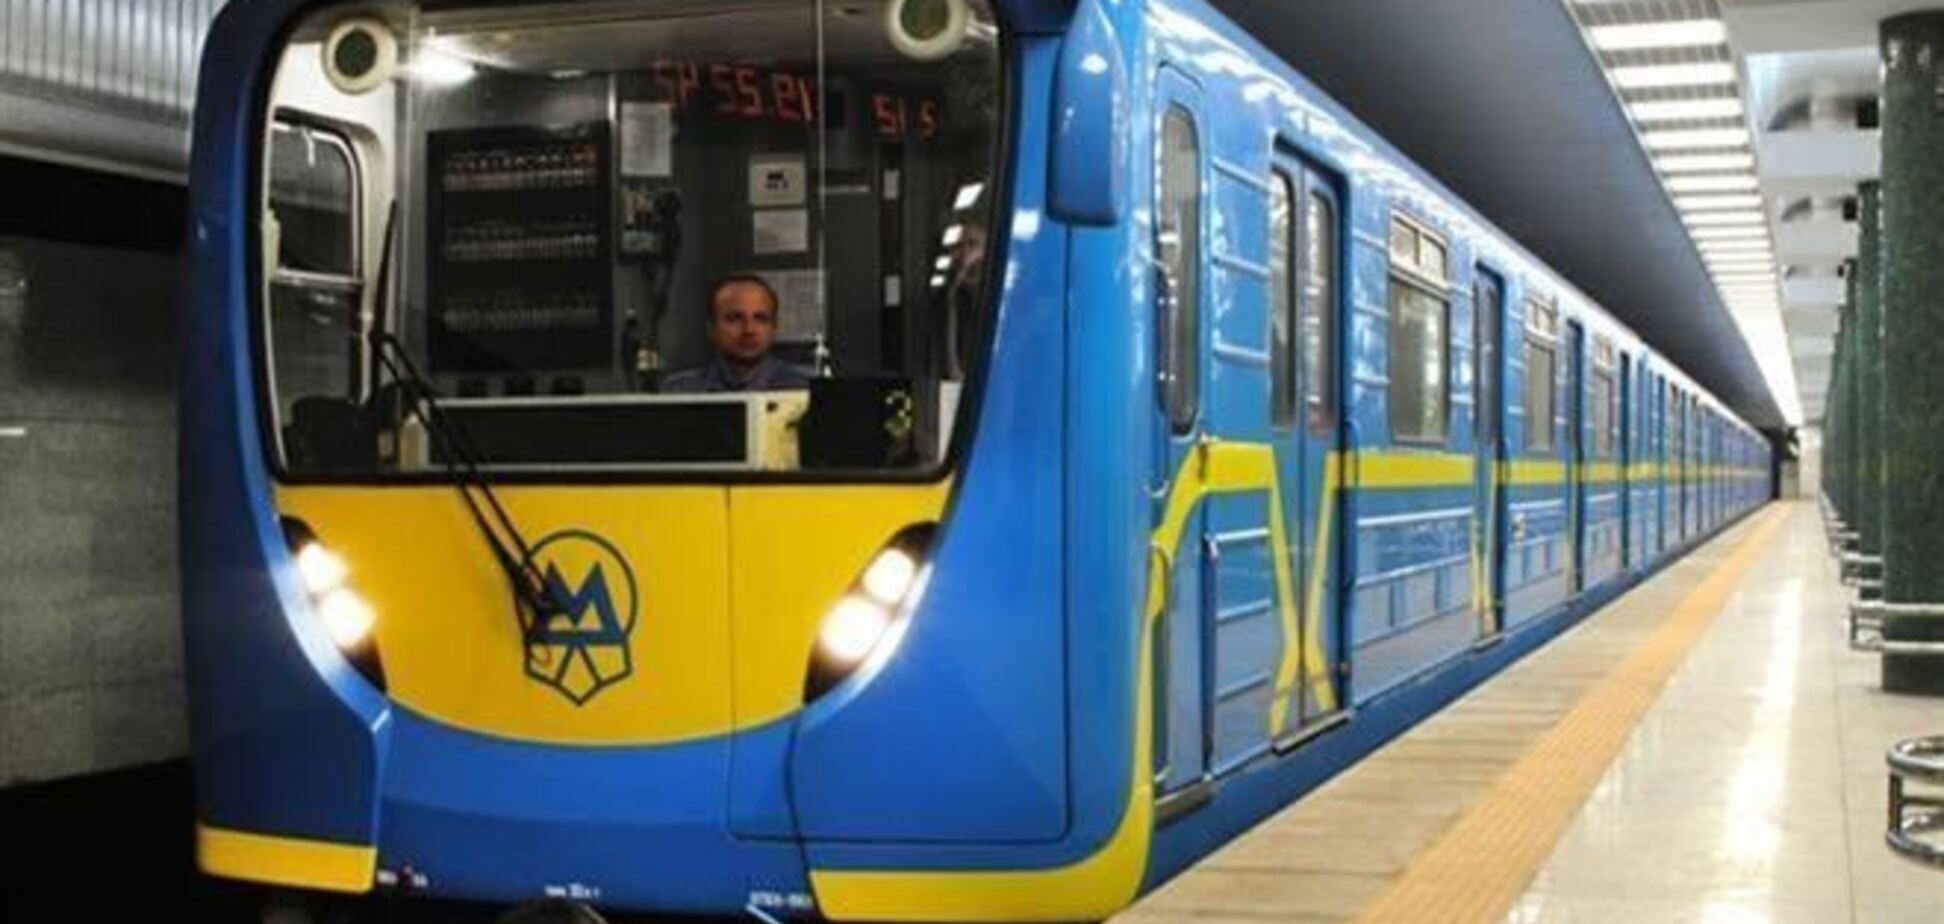 20 февраля киевское метро закрыто, Евромайдан планирует пикет